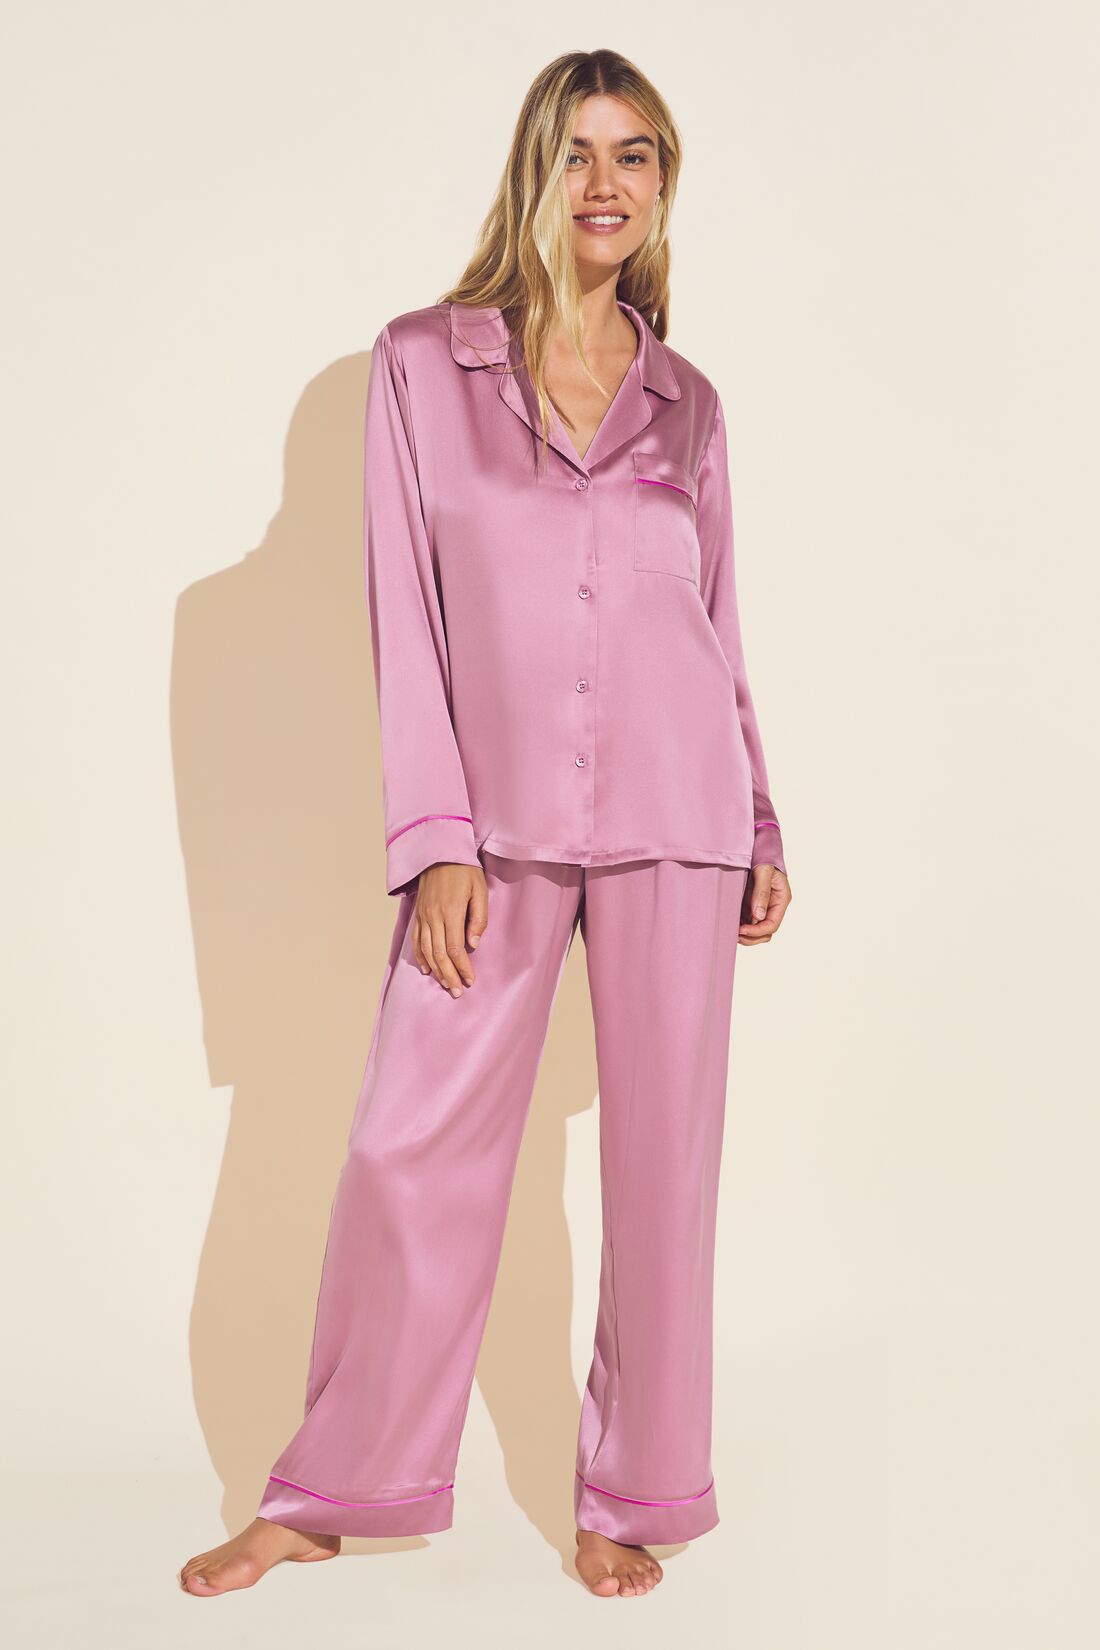 jovati Silk Womens Pajamas Set Womens Silk Satin Pajamas Set Two